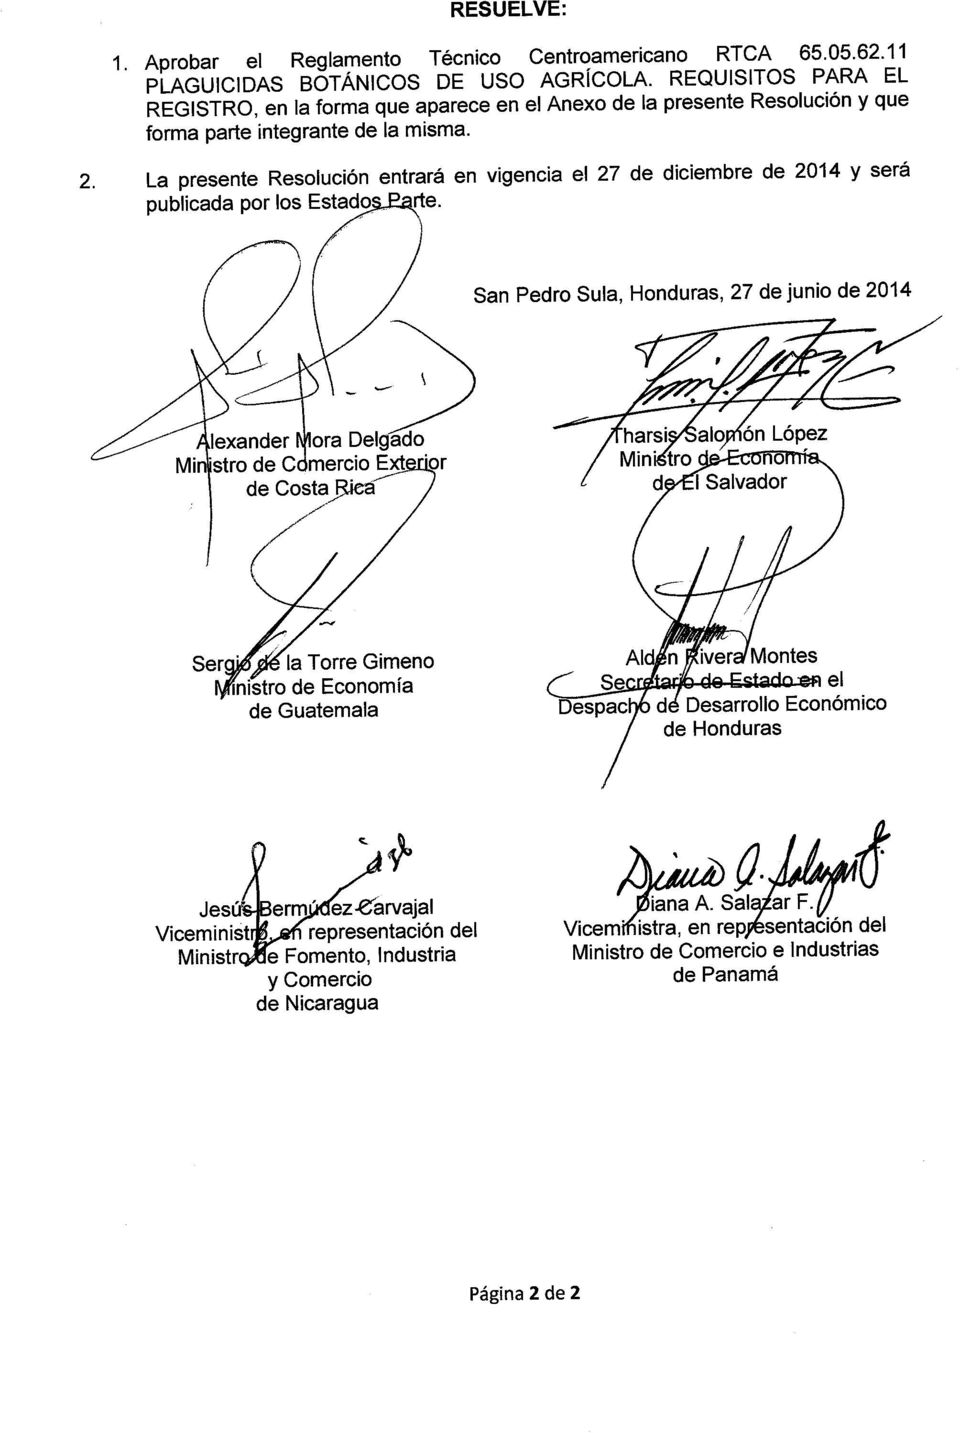 la presente Resolución entrará en vigencia el 27 de diciembre de 2014 y será publicada por los Estado rte.